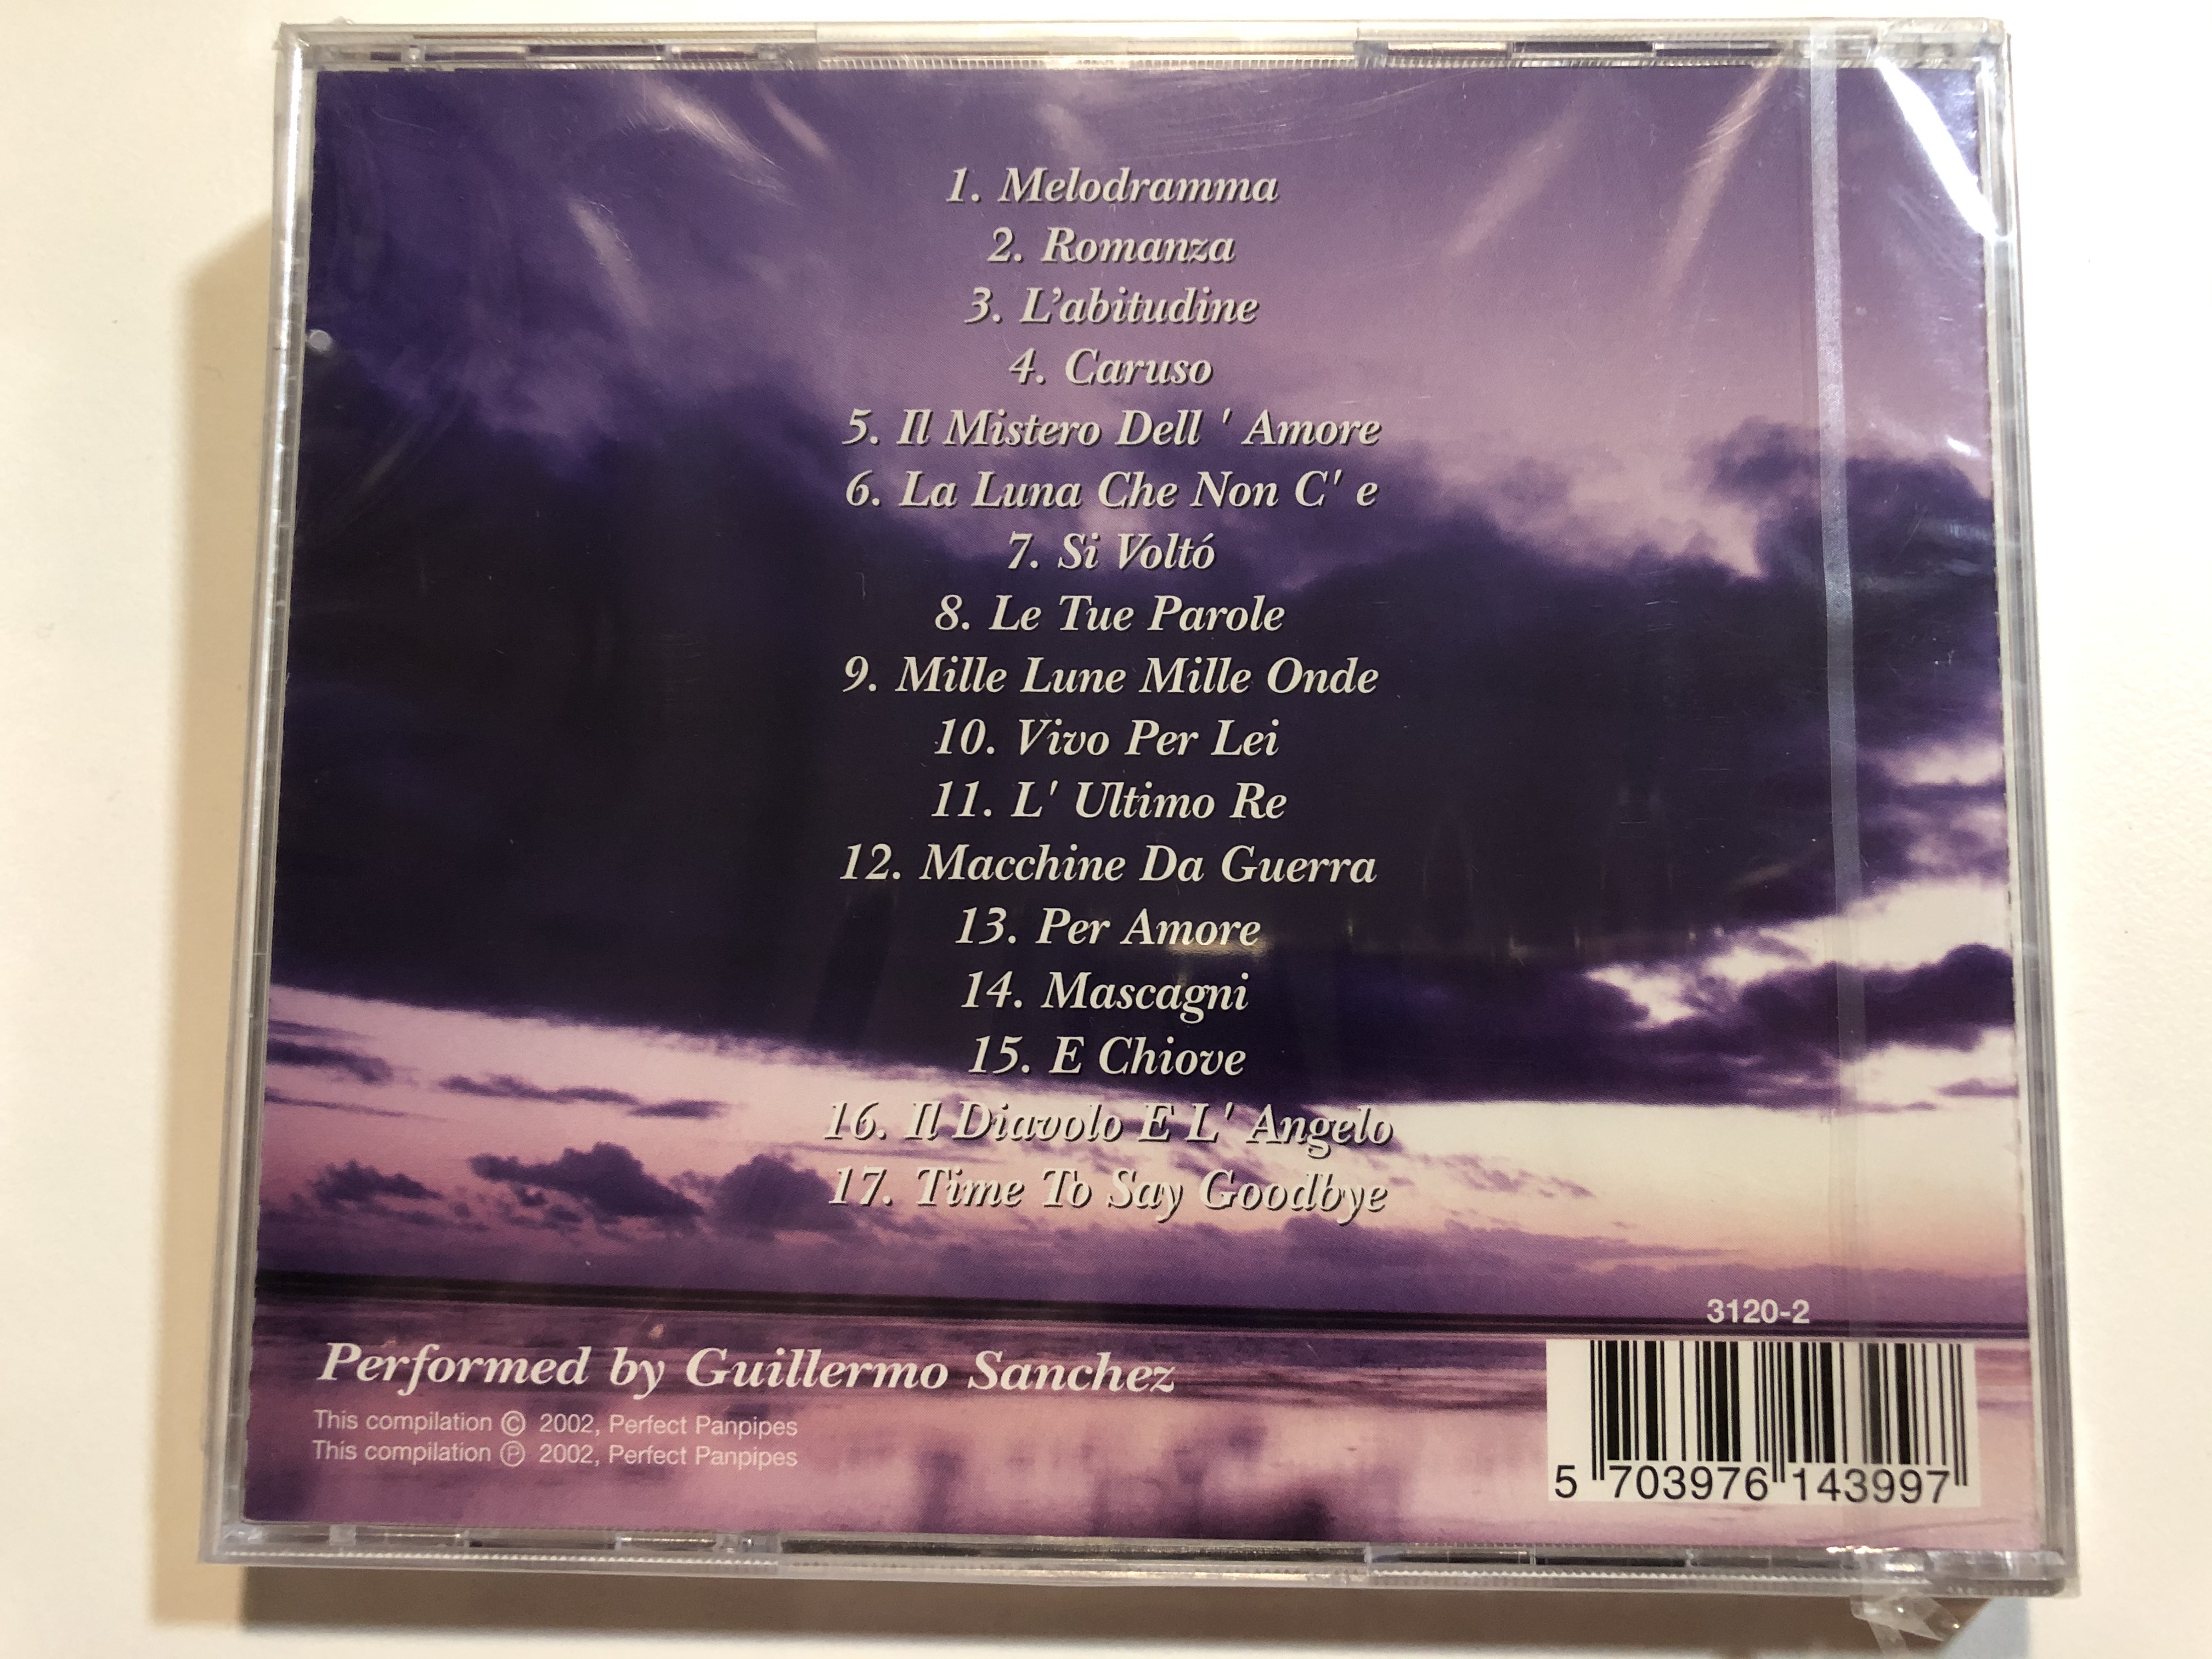 Andrea Bocelli / Melodramma, Romanza, Mascagni, Si Volto, L' Abitudine /  Performed by Guillermo Sanchez / Perfect Panpipes Audio CD 2002 / 3120-2 -  bibleinmylanguage